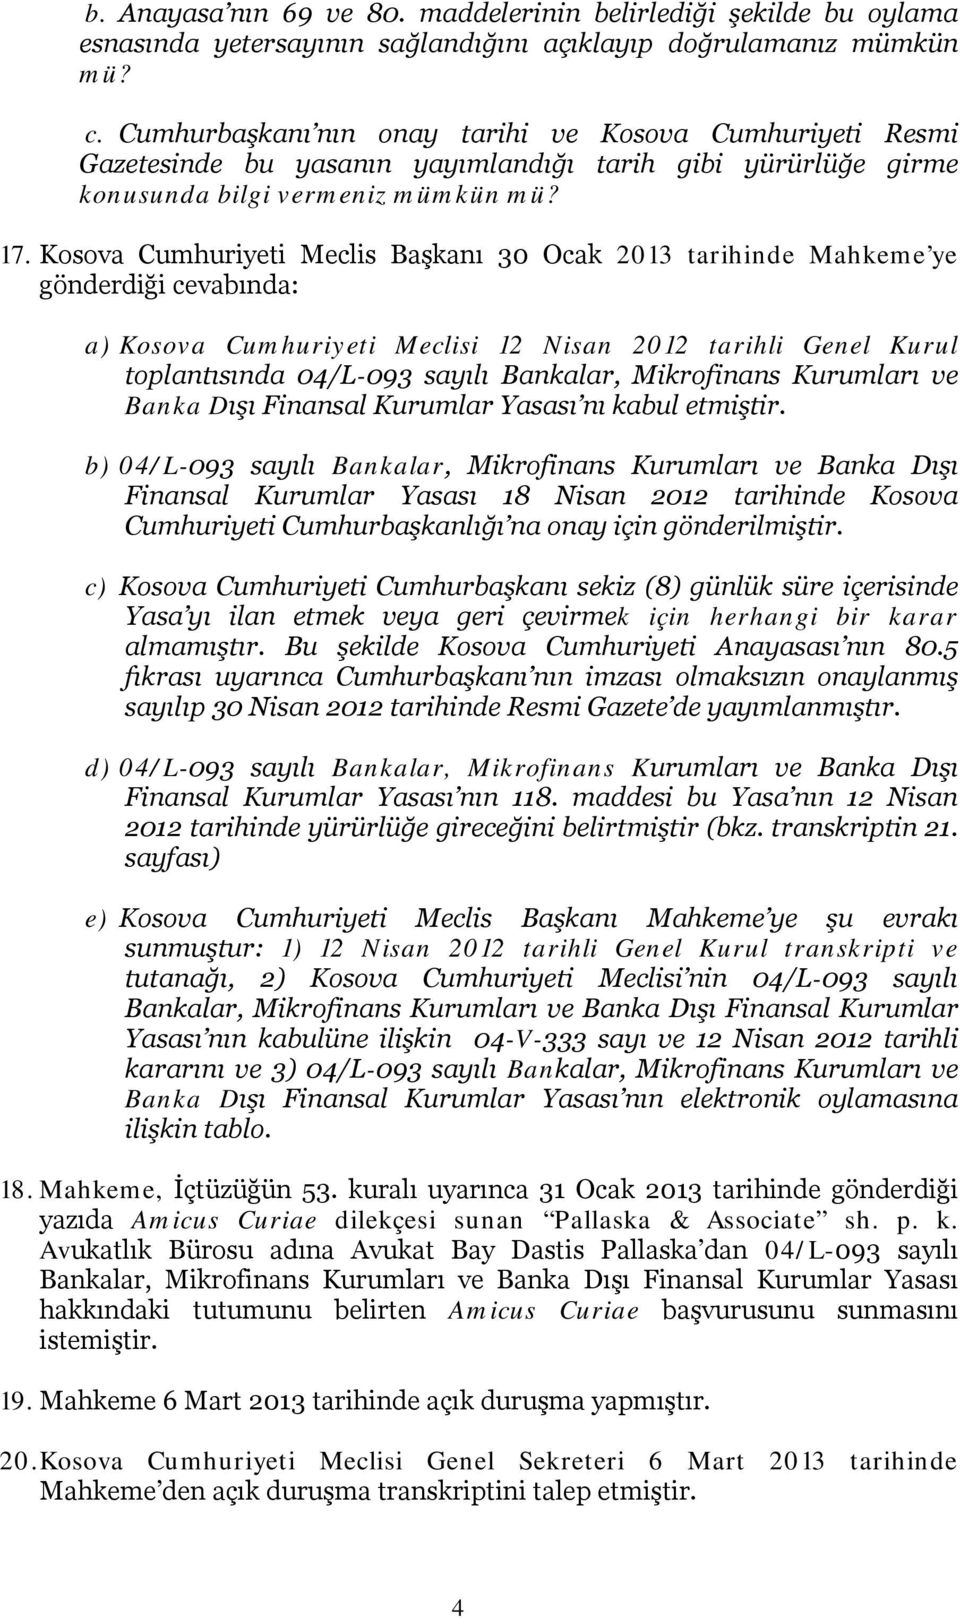 Kosova Cumhuriyeti Meclis Başkanı 30 Ocak 2013 tarihinde Mahkeme ye gönderdiği cevabında: a) Kosova Cumhuriyeti Meclisi 12 Nisan 2012 tarihli Genel Kurul toplantısında 04/L-093 sayılı Bankalar,